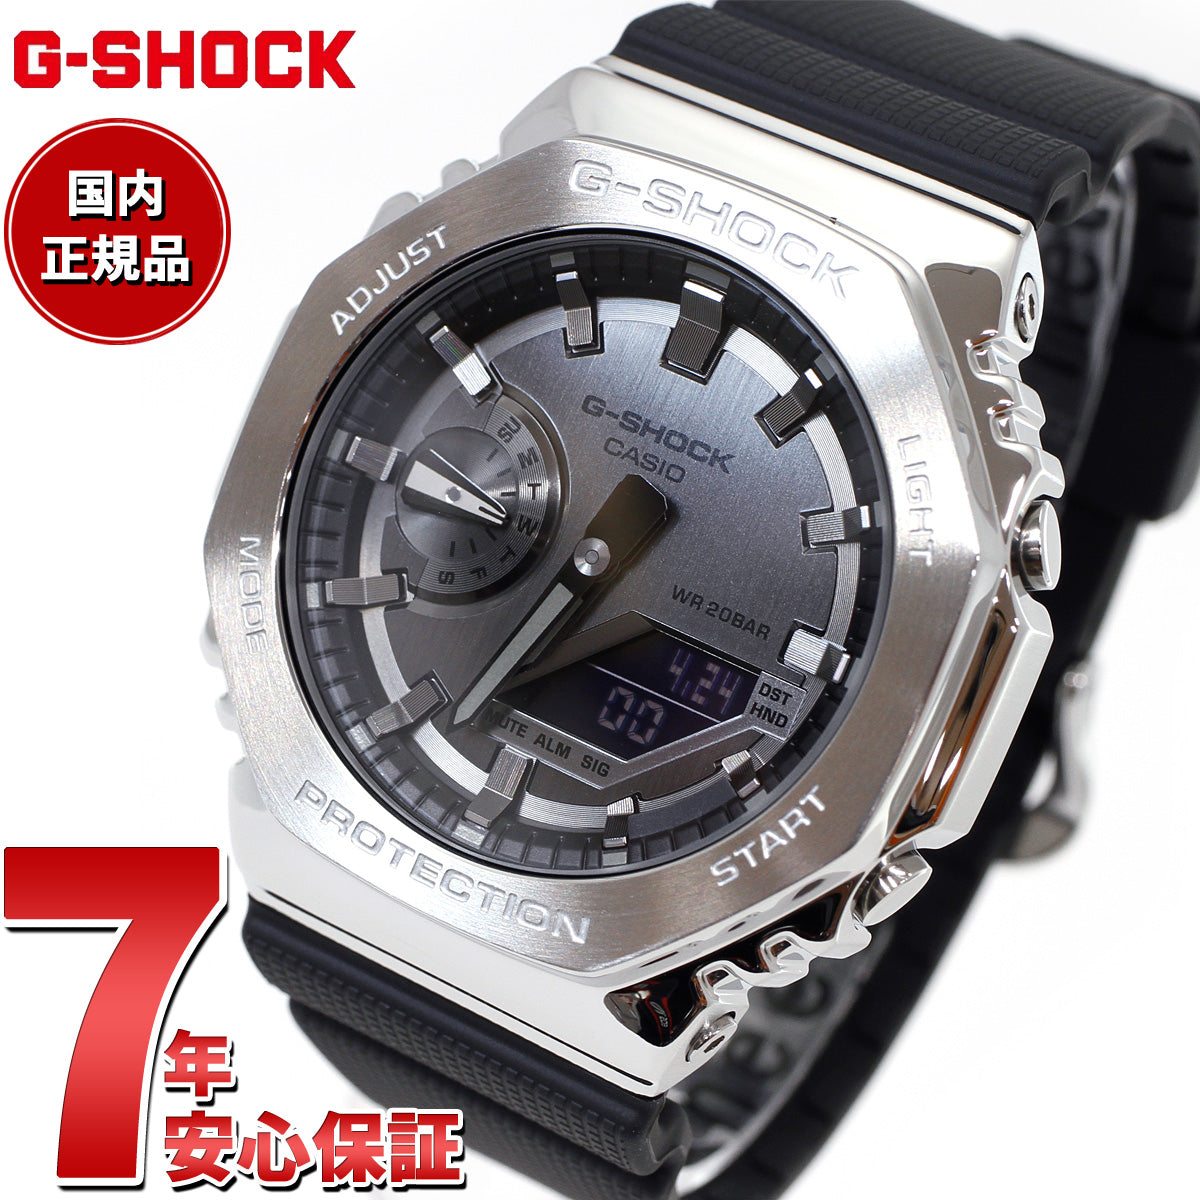 G-SHOCK Gショック メタル カシオ CASIO 腕時計 メンズ グレー 